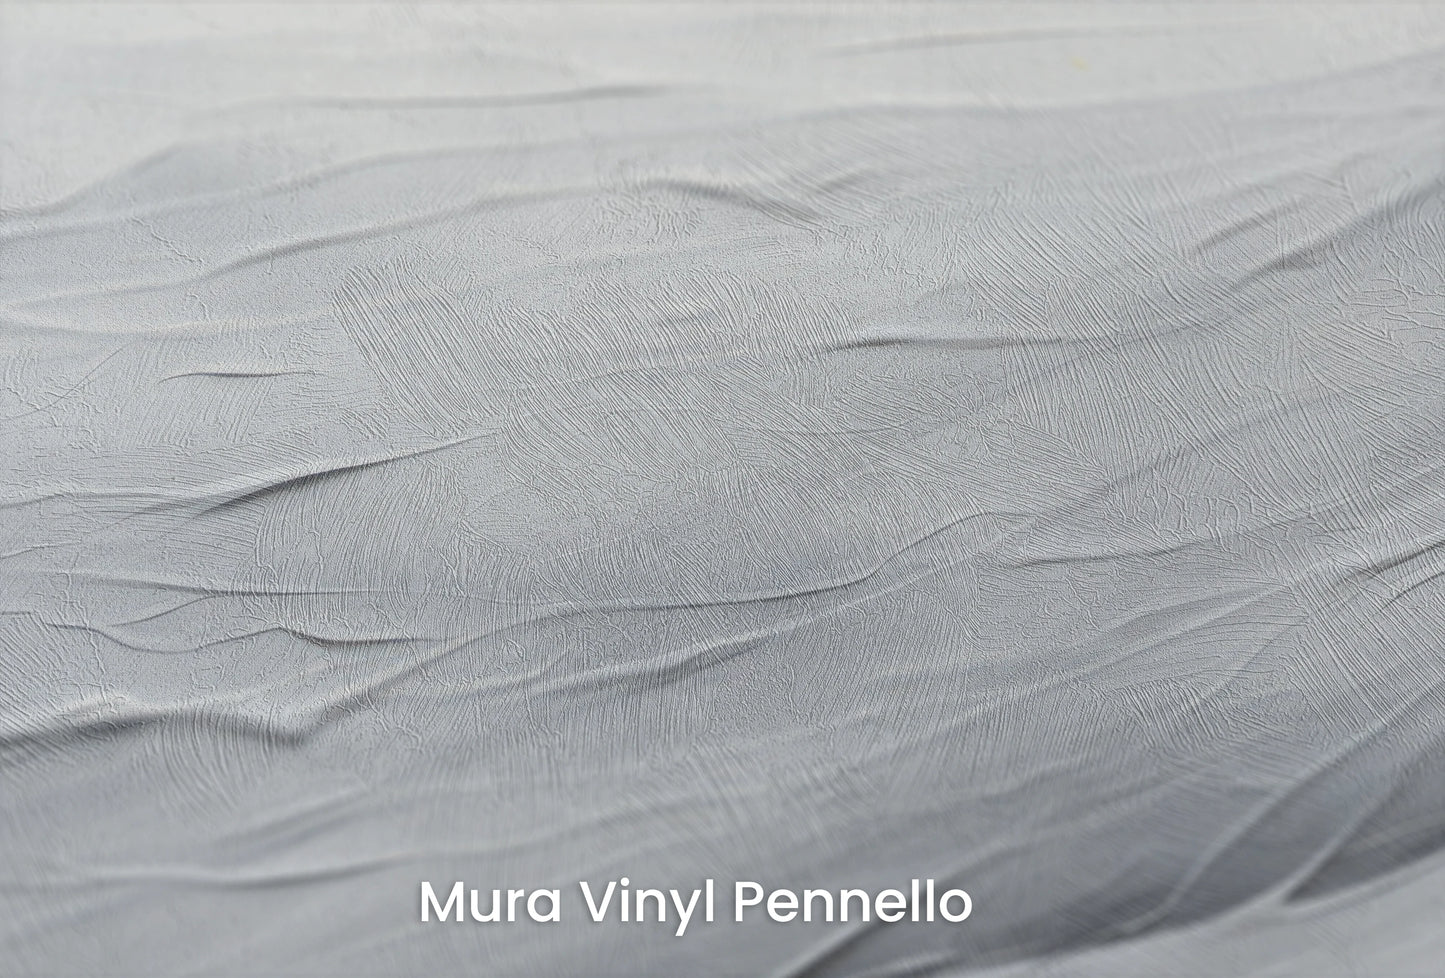 Zbliżenie na artystyczną fototapetę o nazwie Arctic Flow na podłożu Mura Vinyl Pennello - faktura pociągnięć pędzla malarskiego.